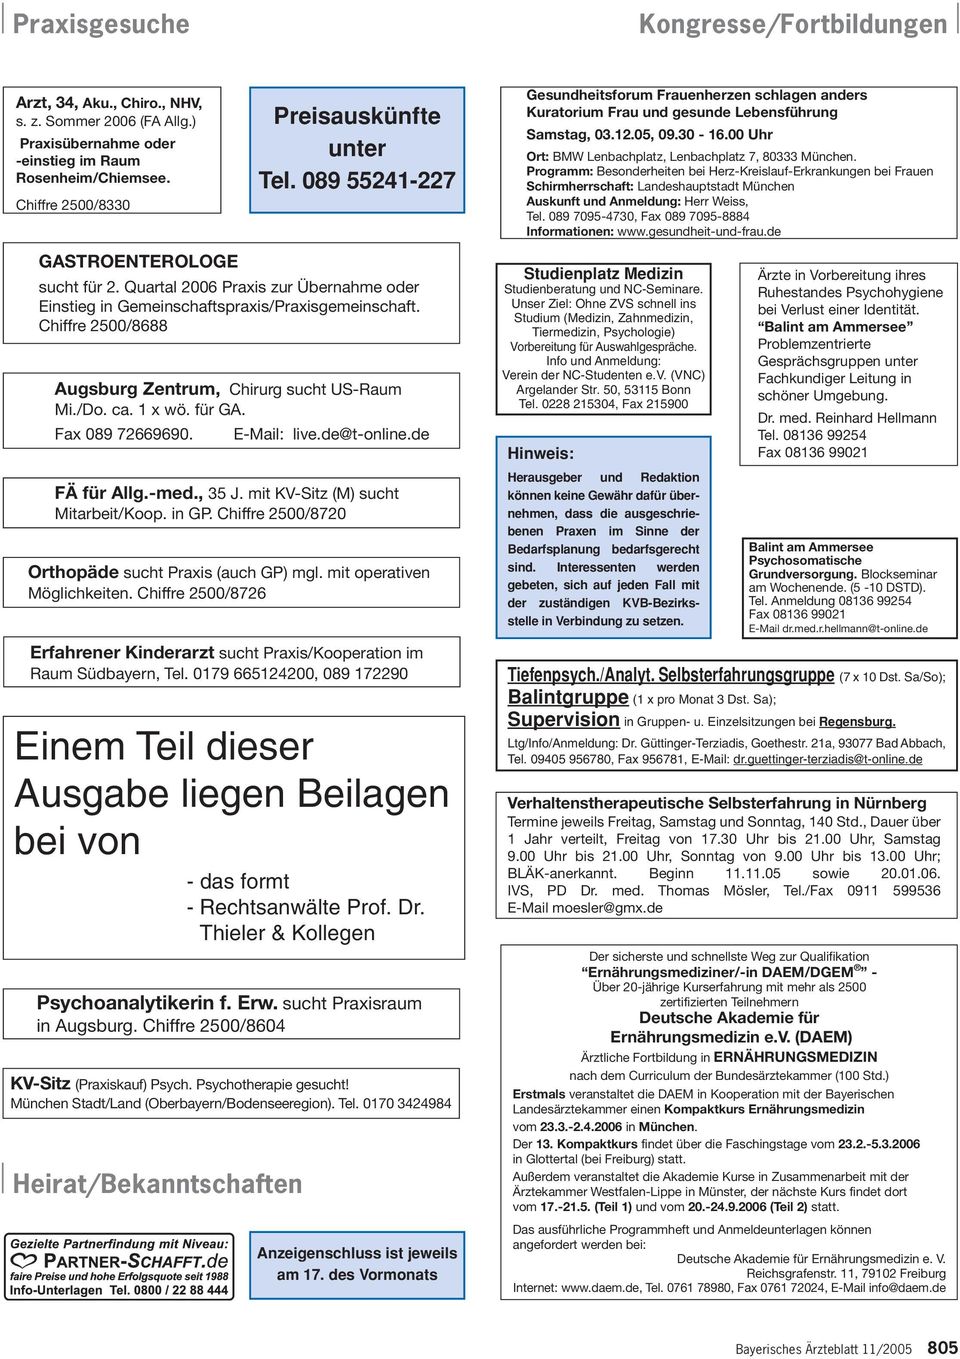 Programm: Besonderheiten bei Herz-Kreislauf-Erkrankungen bei Frauen Schirmherrschaft: Landeshauptstadt München Auskunft und Anmeldung: Herr Weiss, Tel.